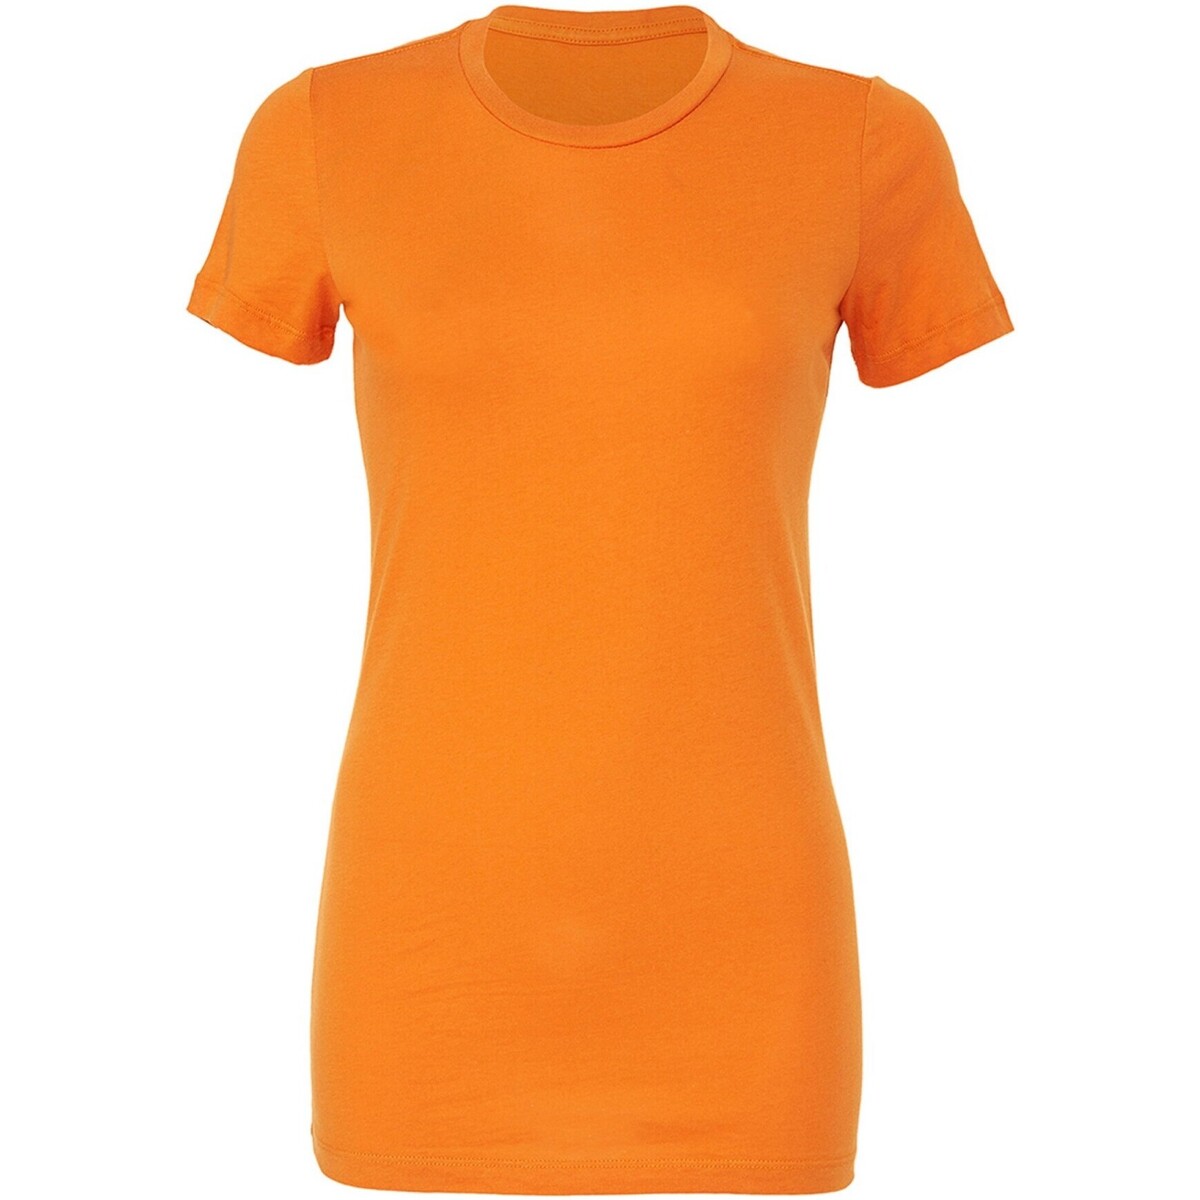 Abbigliamento Donna T-shirts a maniche lunghe Bella + Canvas The Favourite Arancio